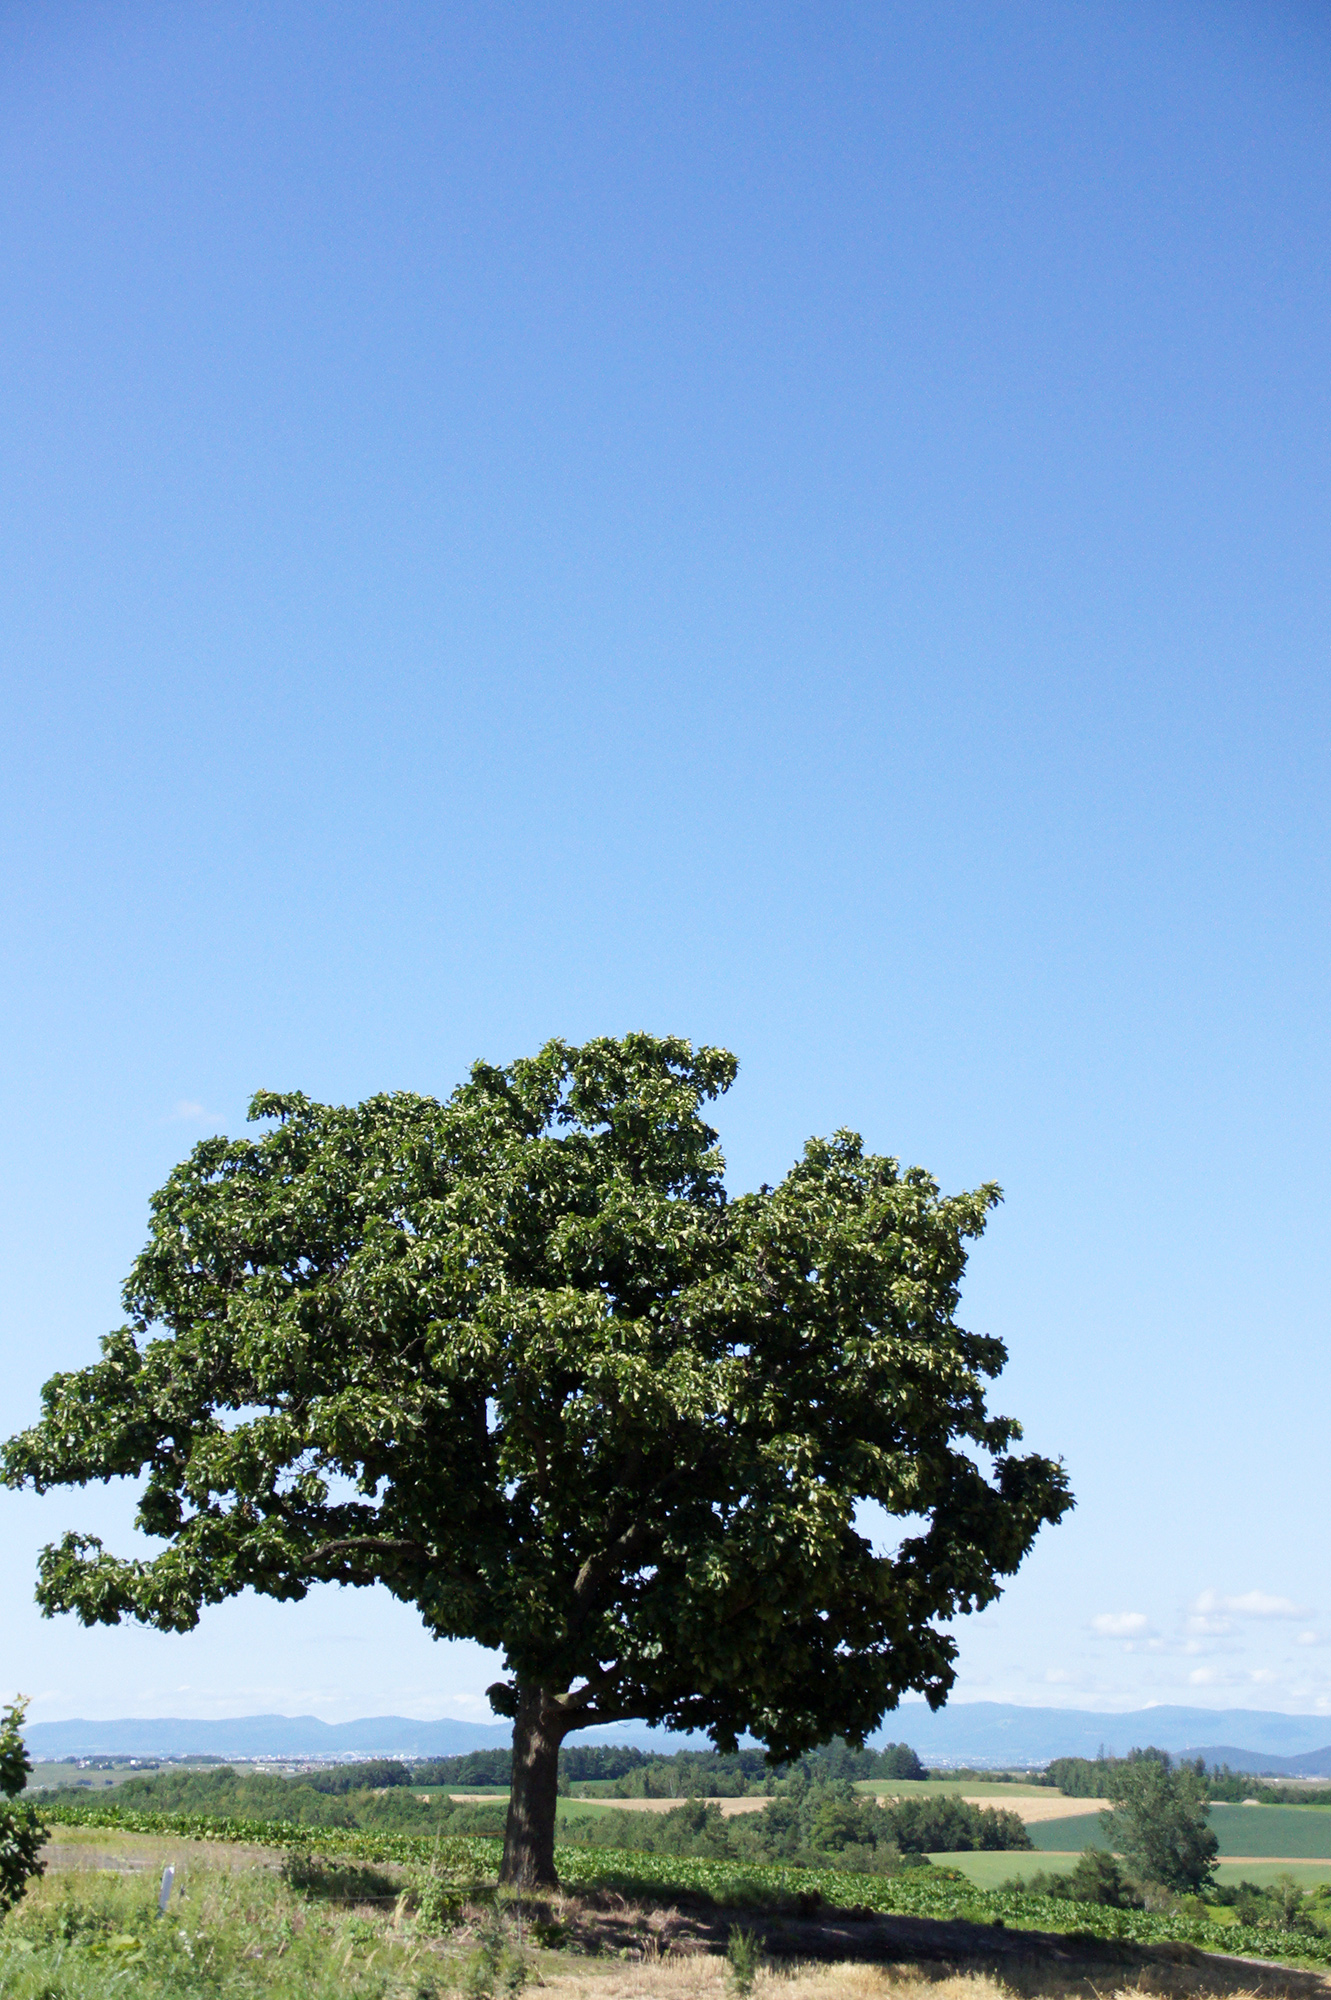 美瑛のセブンスターの木の写真のフリー素材